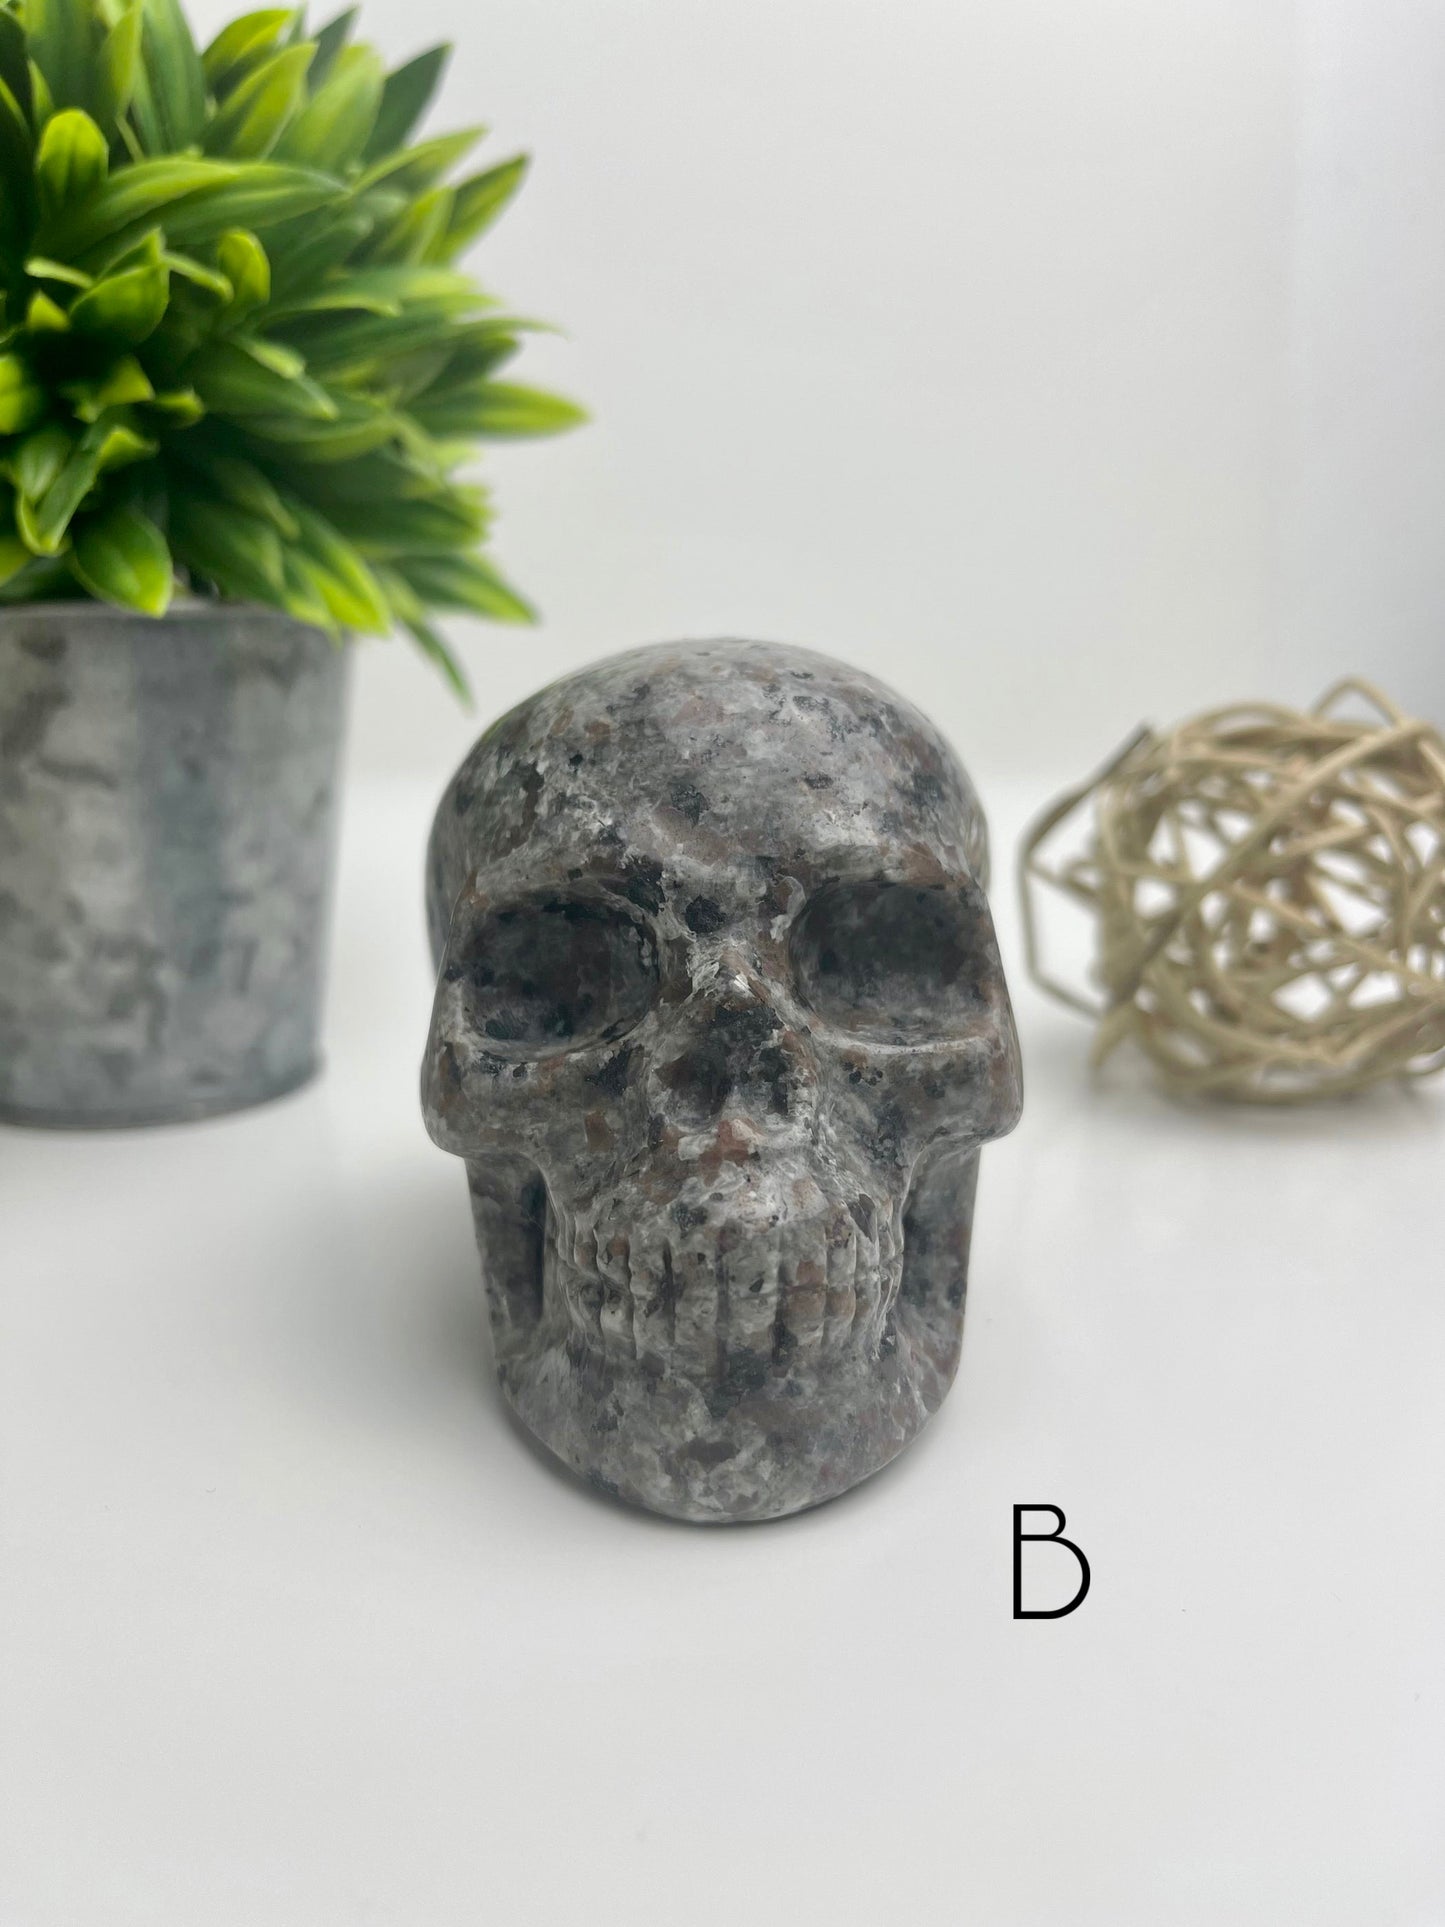 Yooperlite Skull B